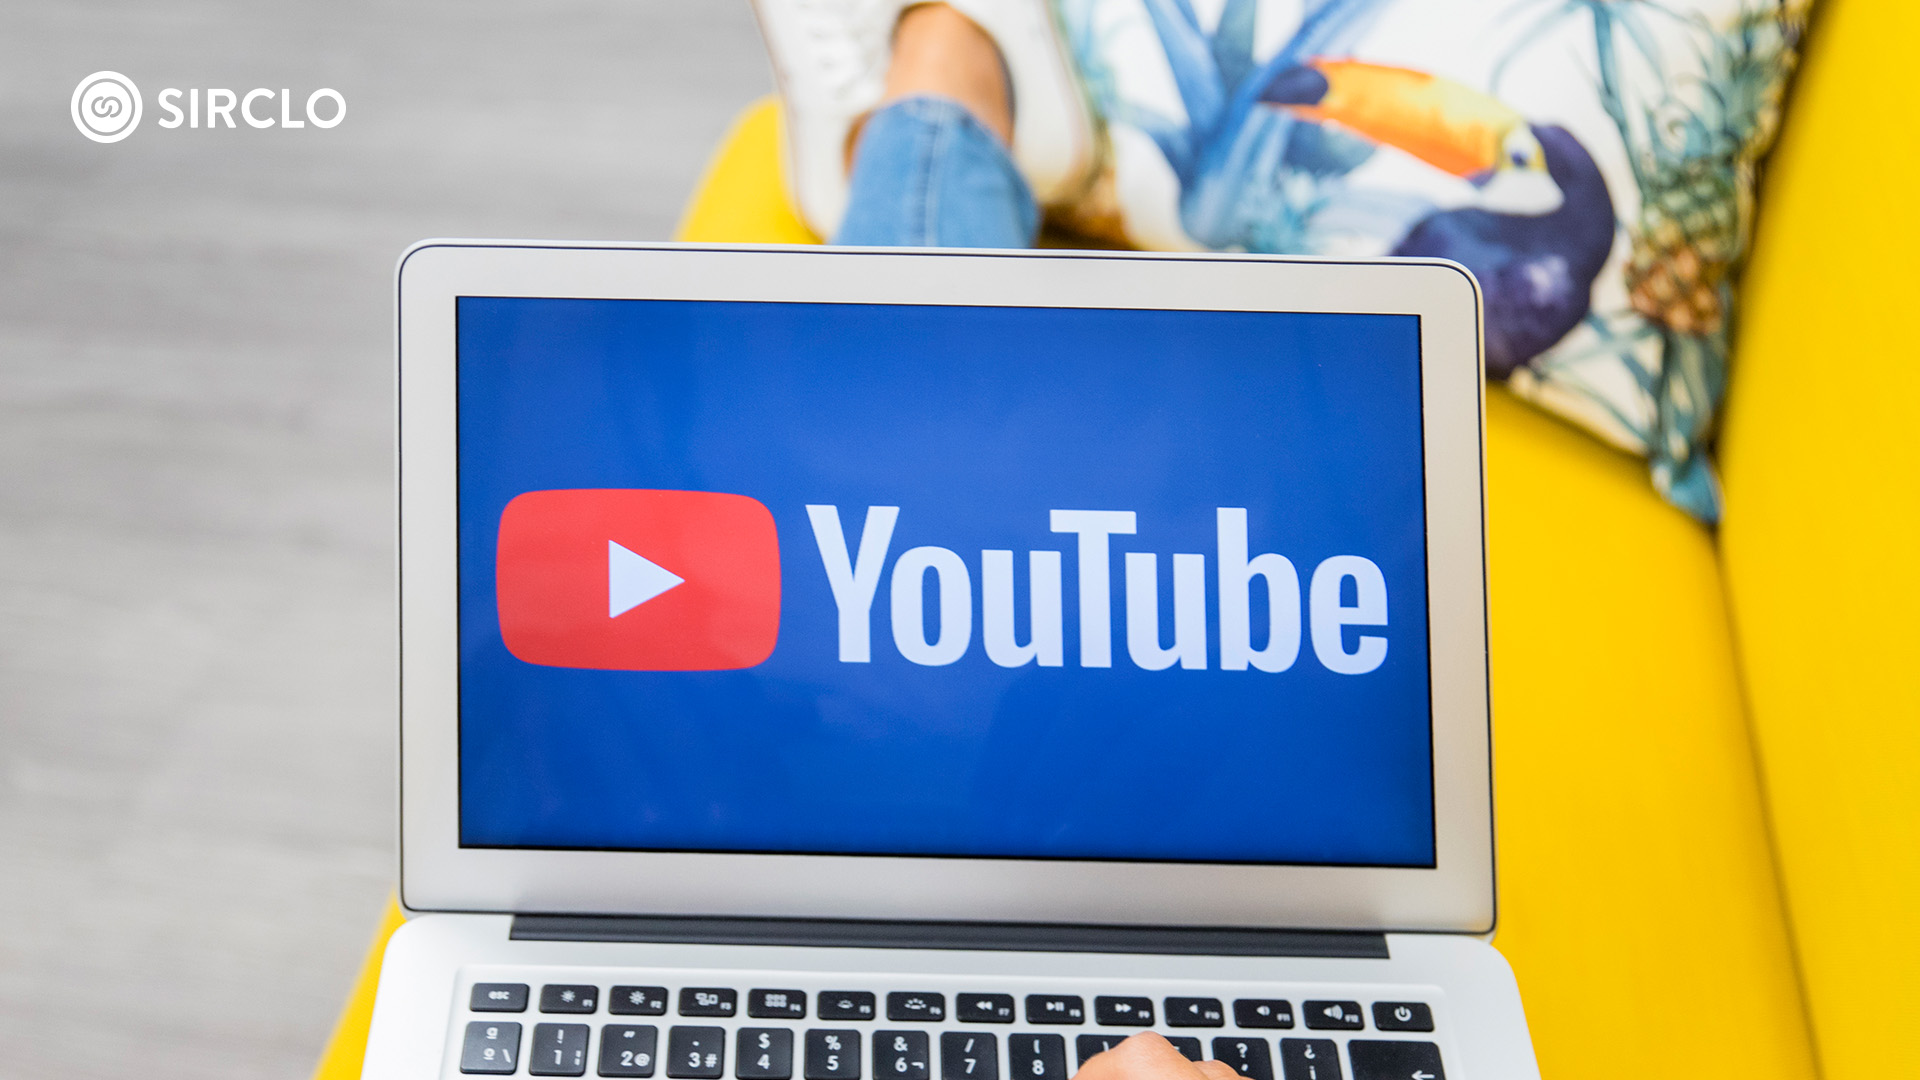 Syarat Monetize Youtube. 5 Syarat Monetize YouTube Yang Harus Kamu Capai